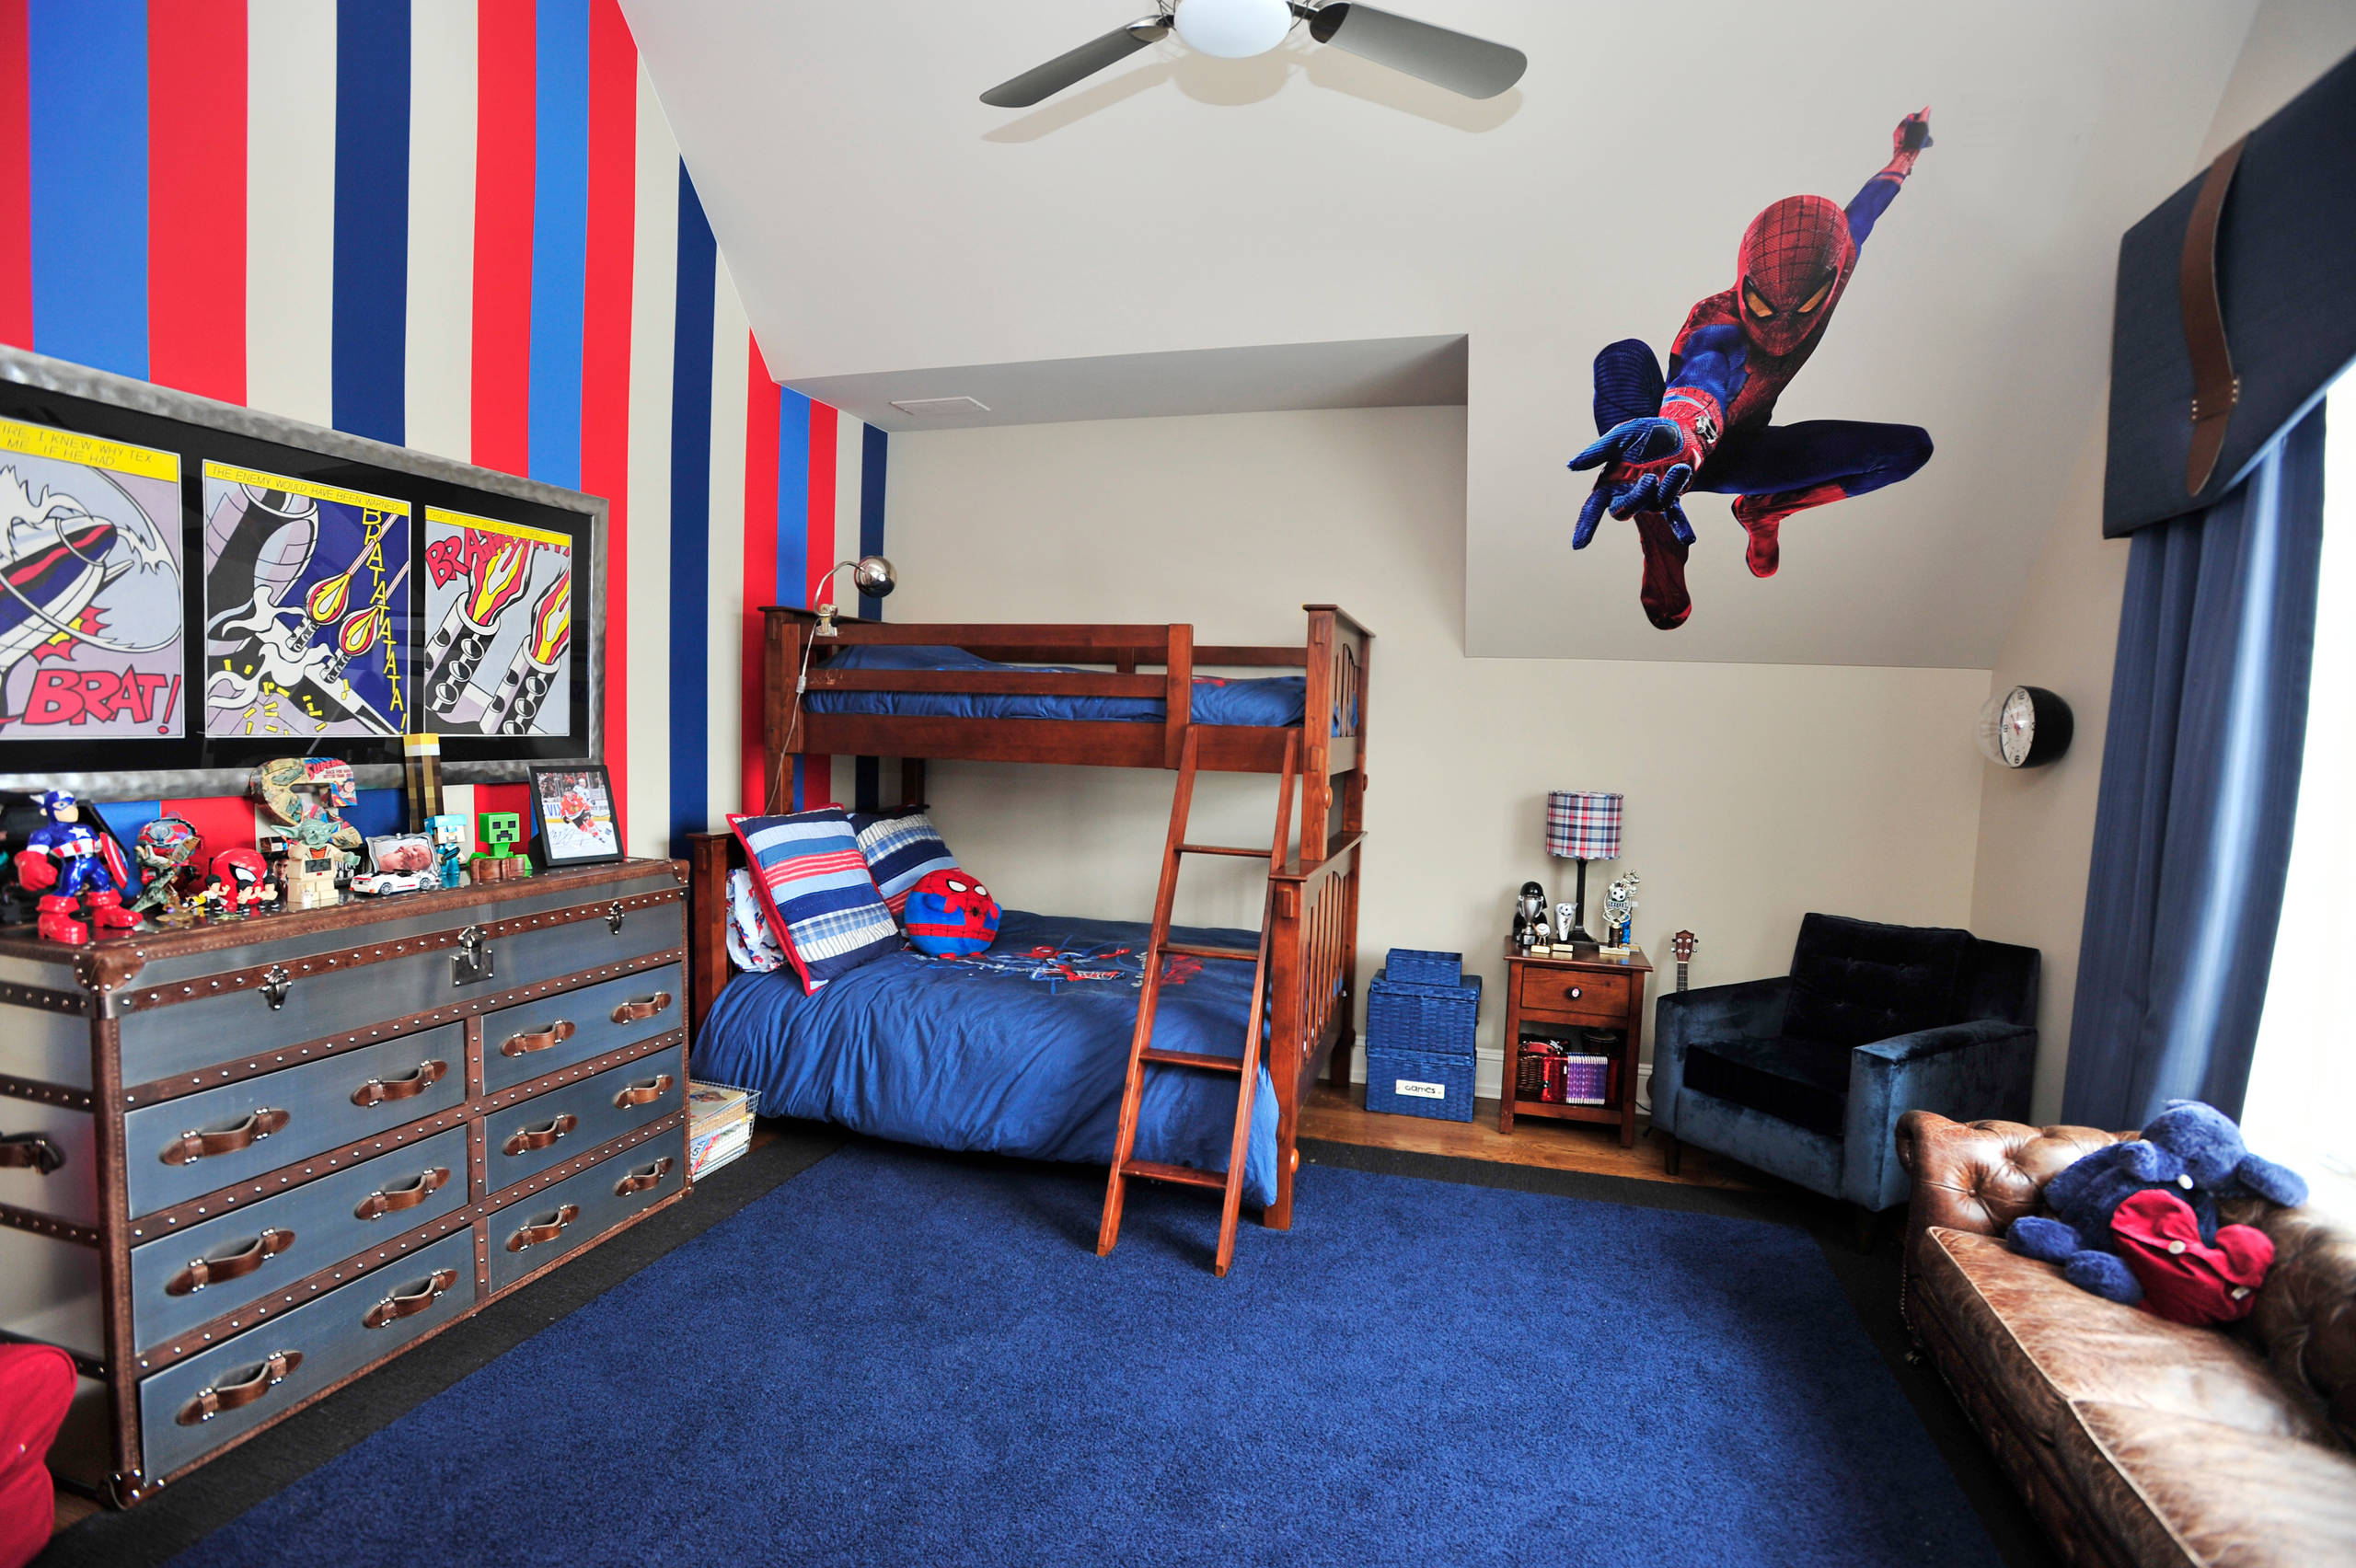 Spiderman Bedroom - Photos & Ideas | Houzz